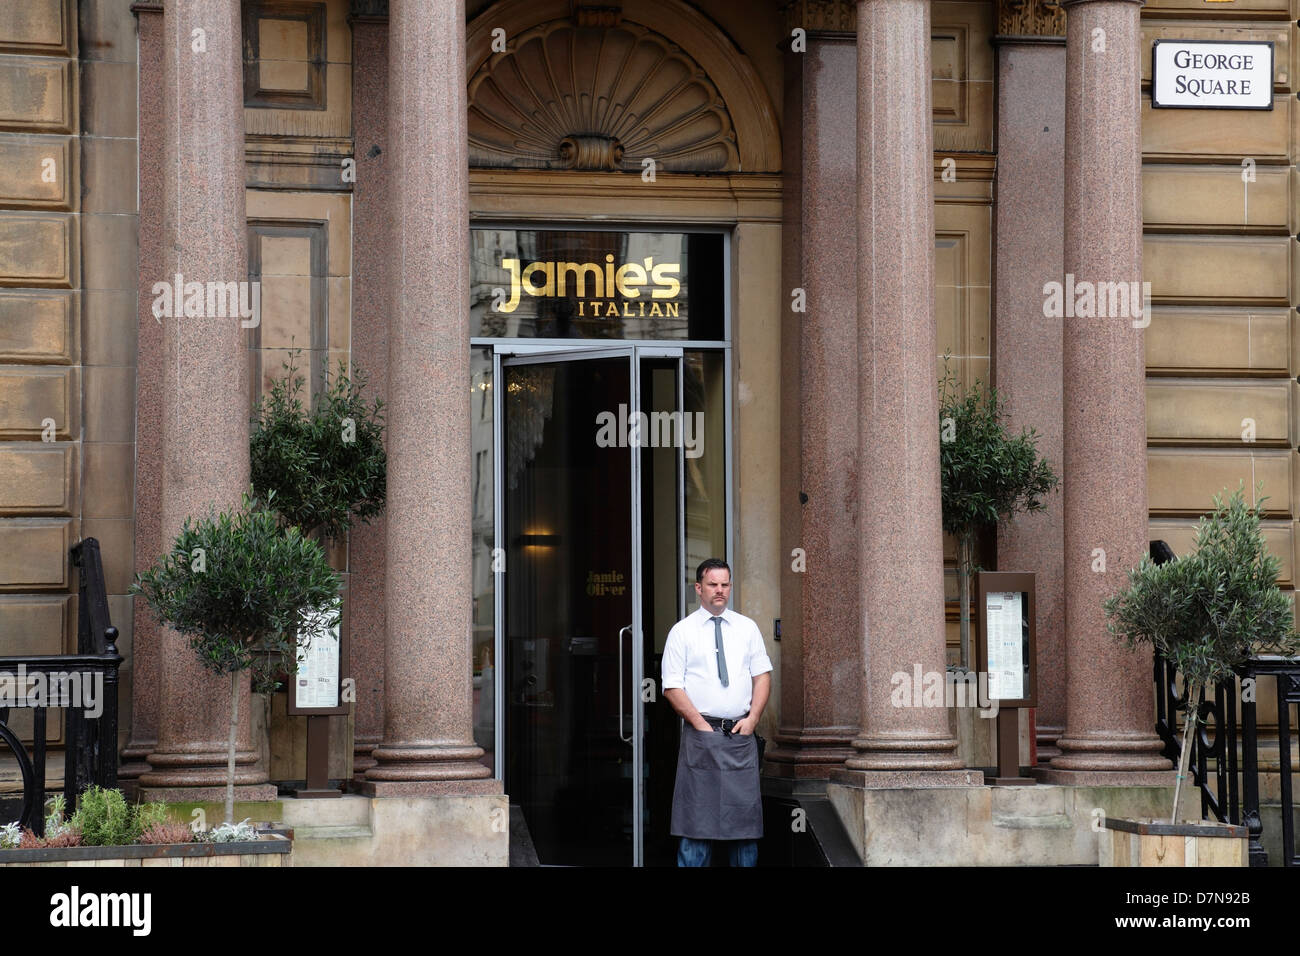 Este restaurante permanece cerrado. Entrada al restaurante italiano Jamie Oliver's en George Square en el centro de Glasgow, Escocia, Reino Unido, Foto de stock